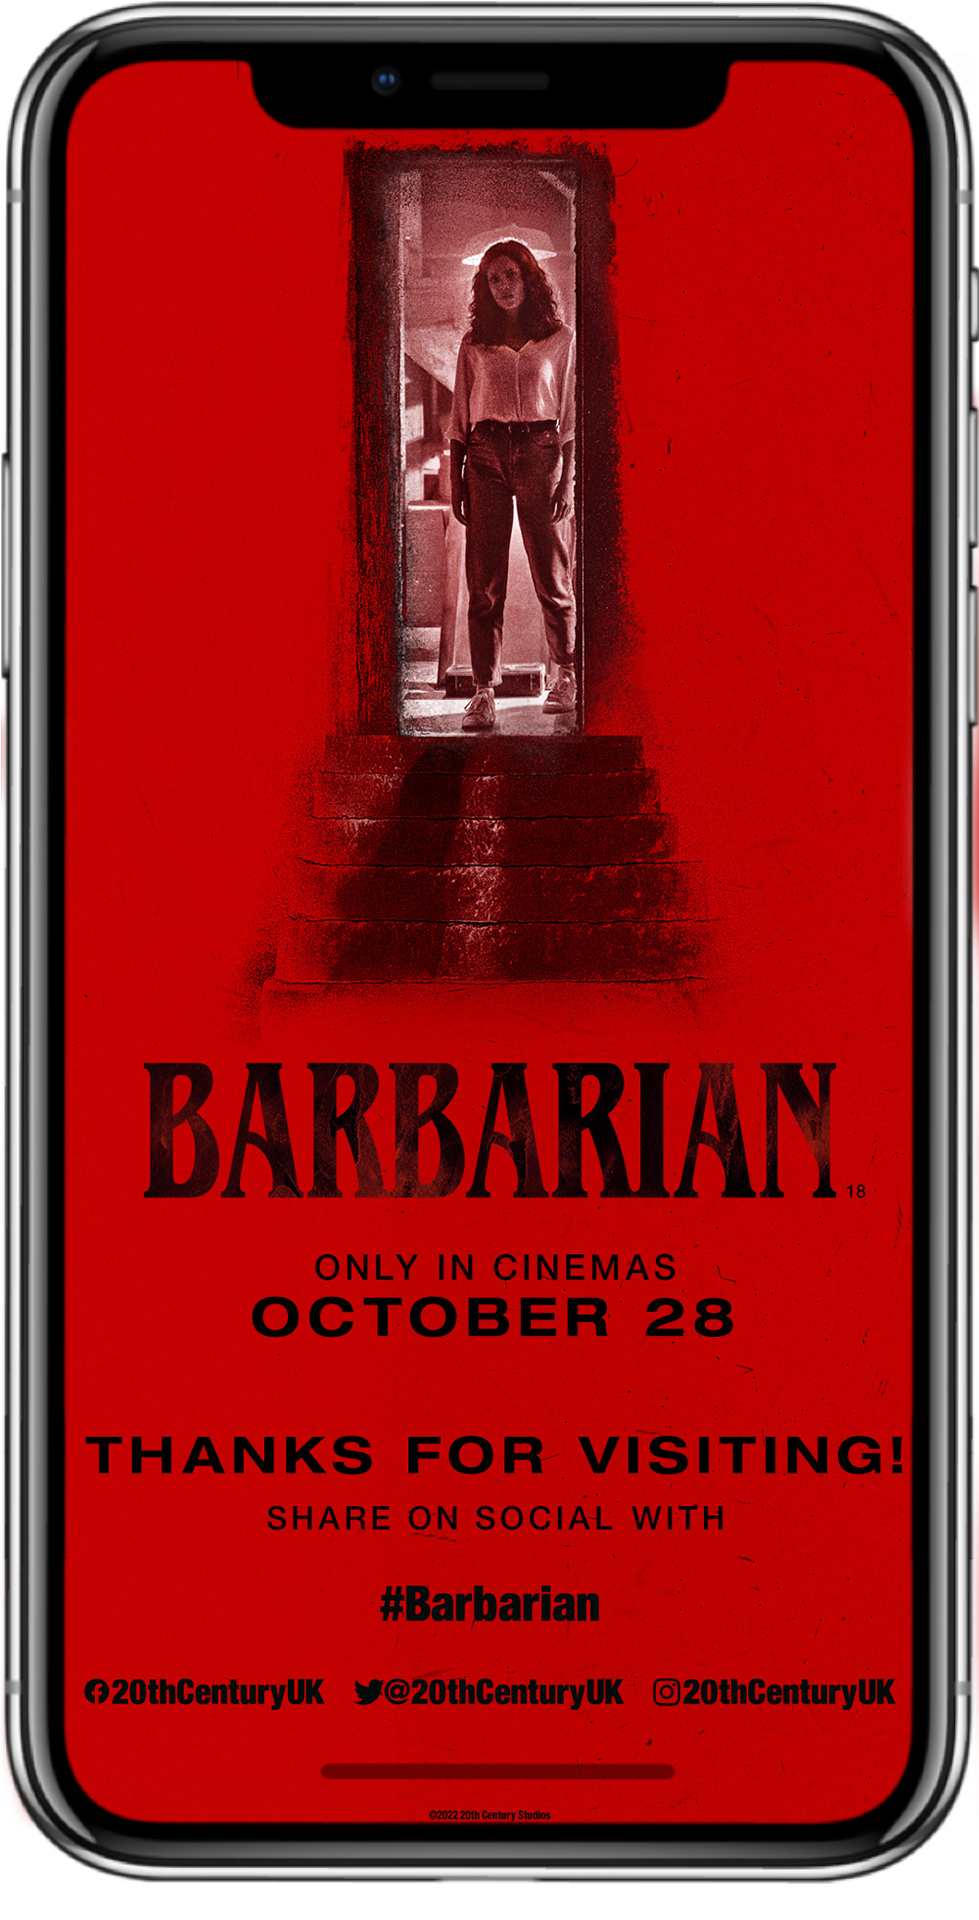 barbarian-mobile-screen-5